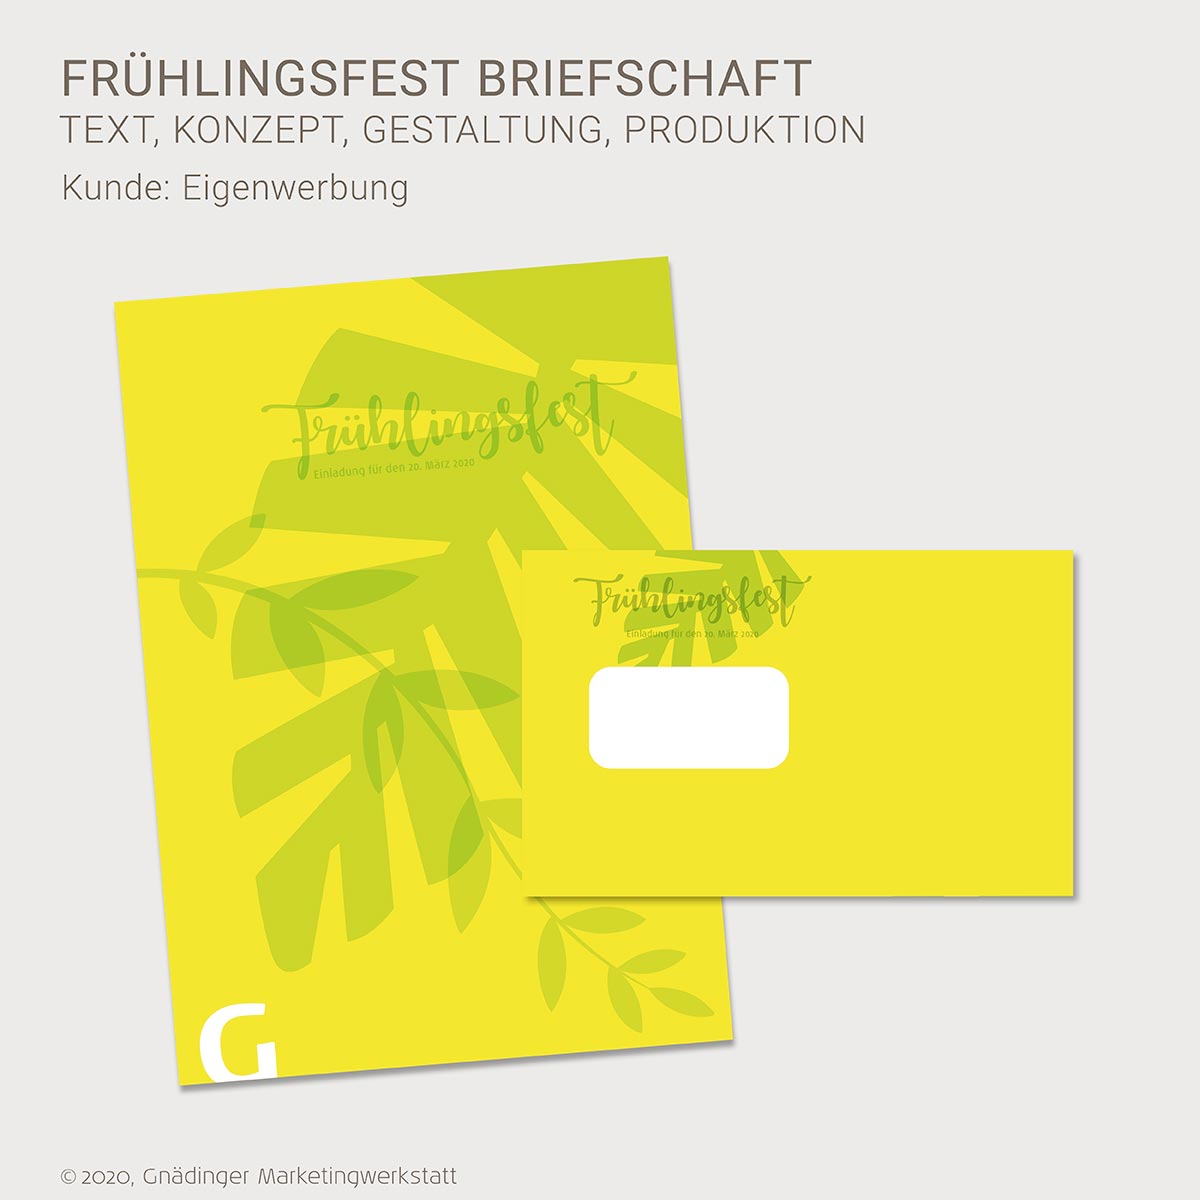 WEB1_GMW_Projekt_GMW_Briefschaft_fruehlingsfest_01-2020_1200x1200px_RGB